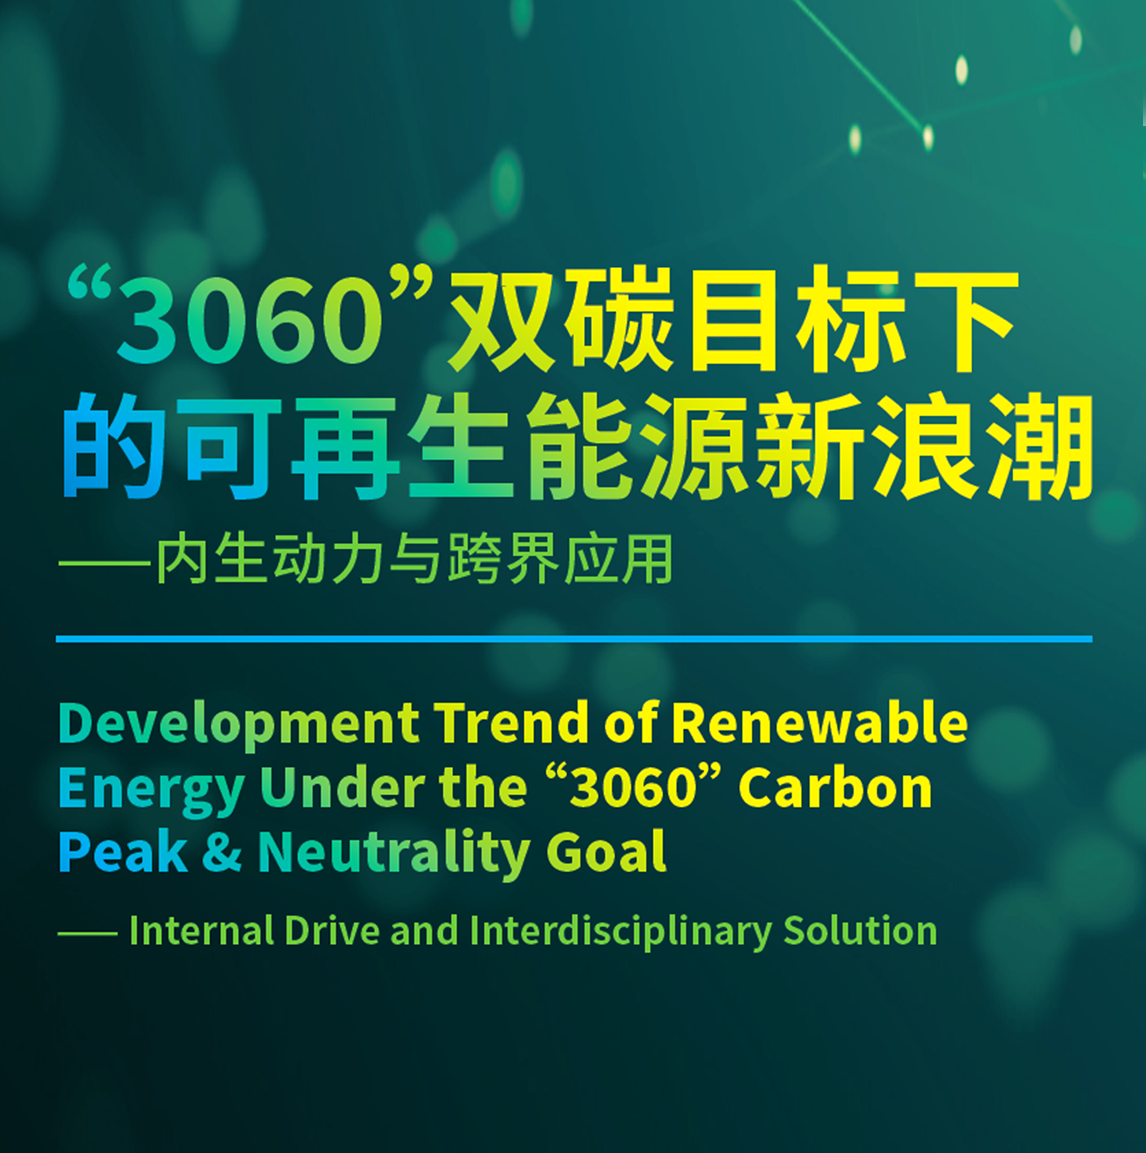 最新报告 ｜ “3060”双碳目标下的可再生能源新浪潮——内生动力与跨界应用